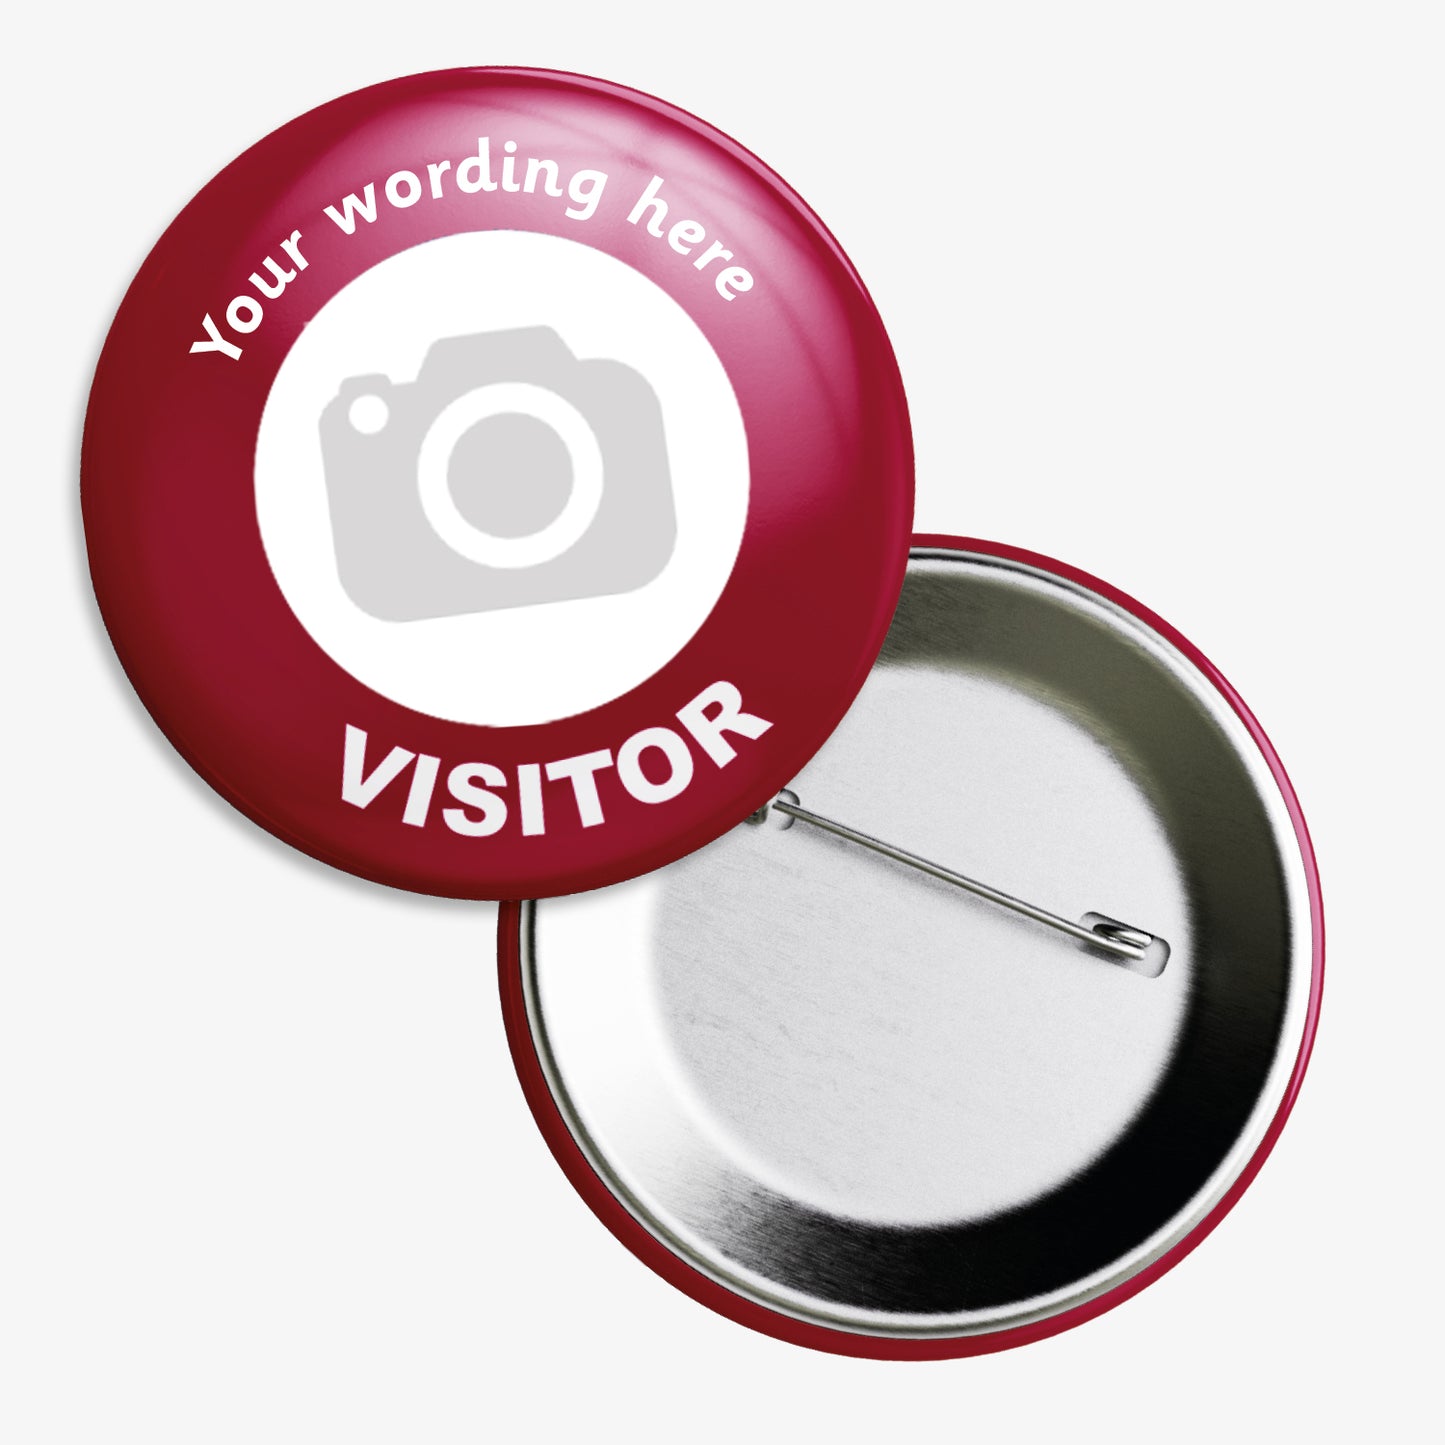 10 Upload Your Own Visitor Badges - 50mm